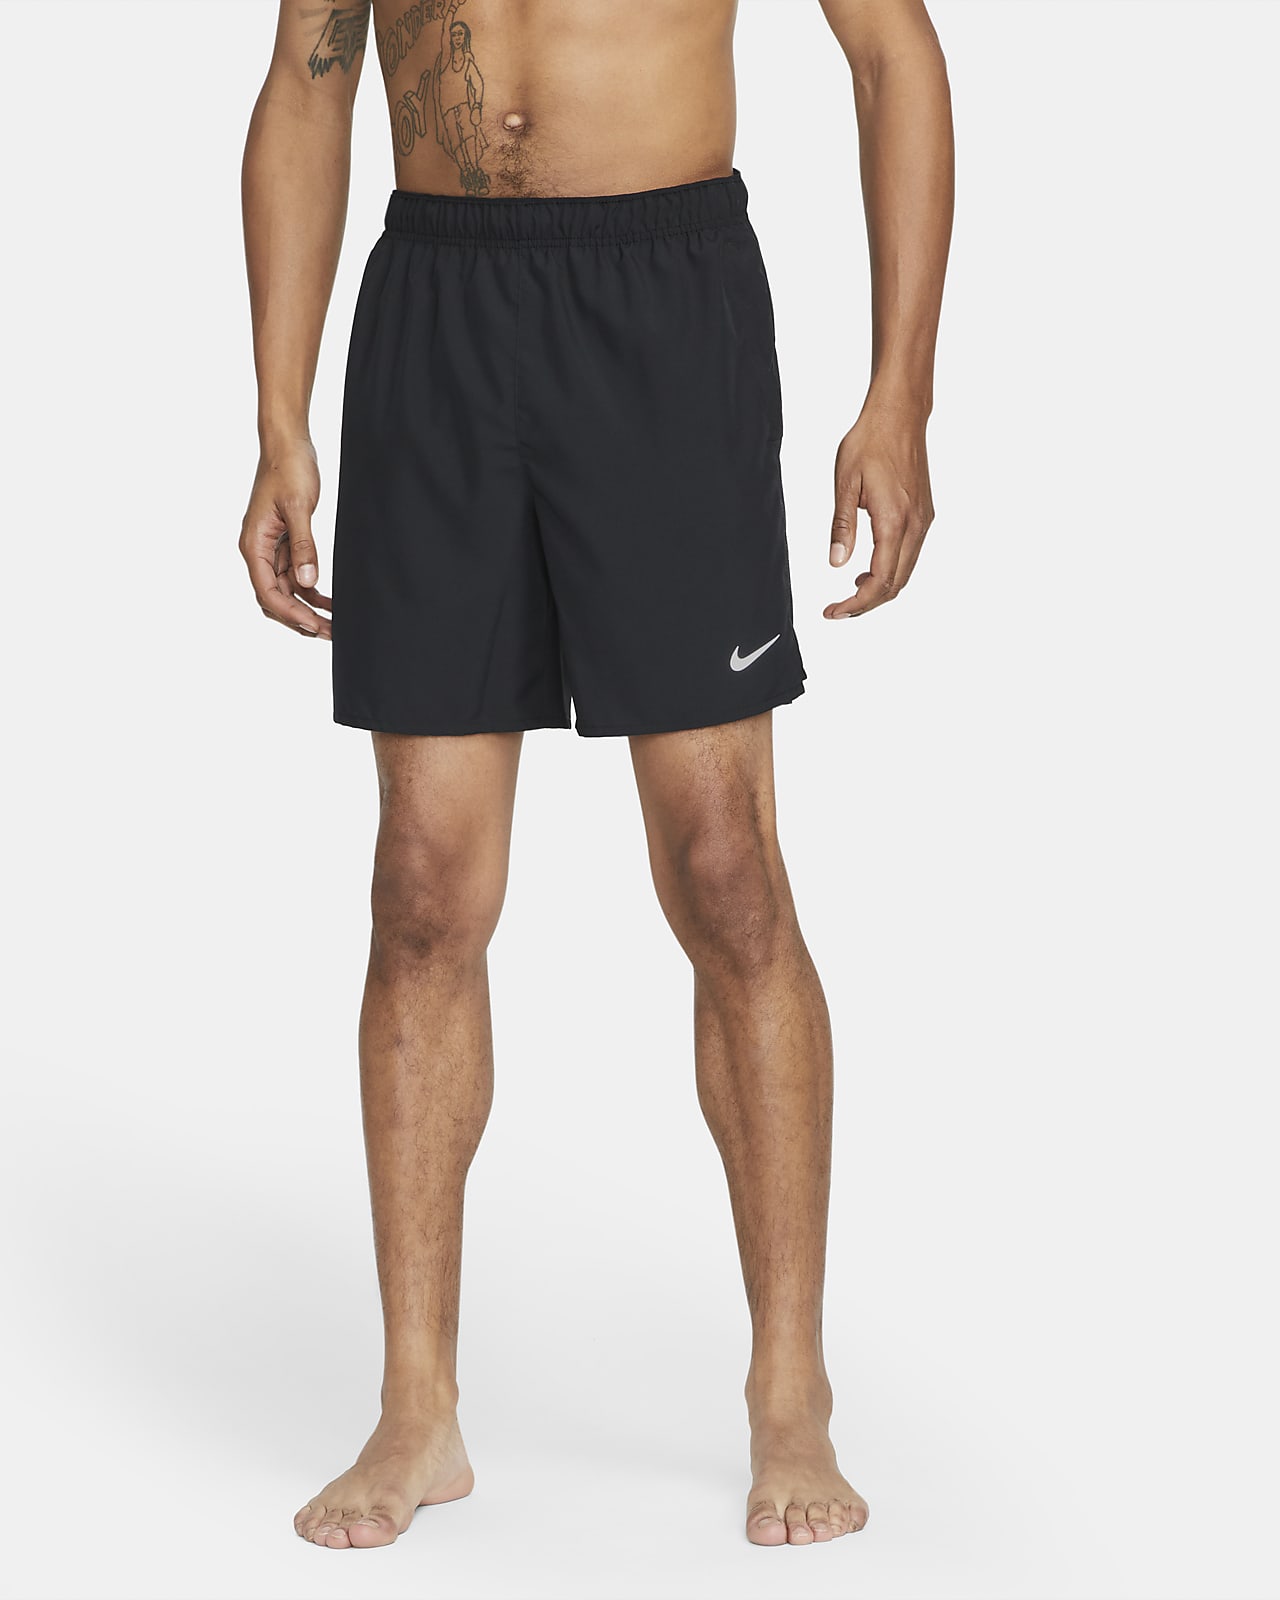 Short de running non doublé 18 cm Dri-FIT Nike Challenger pour homme